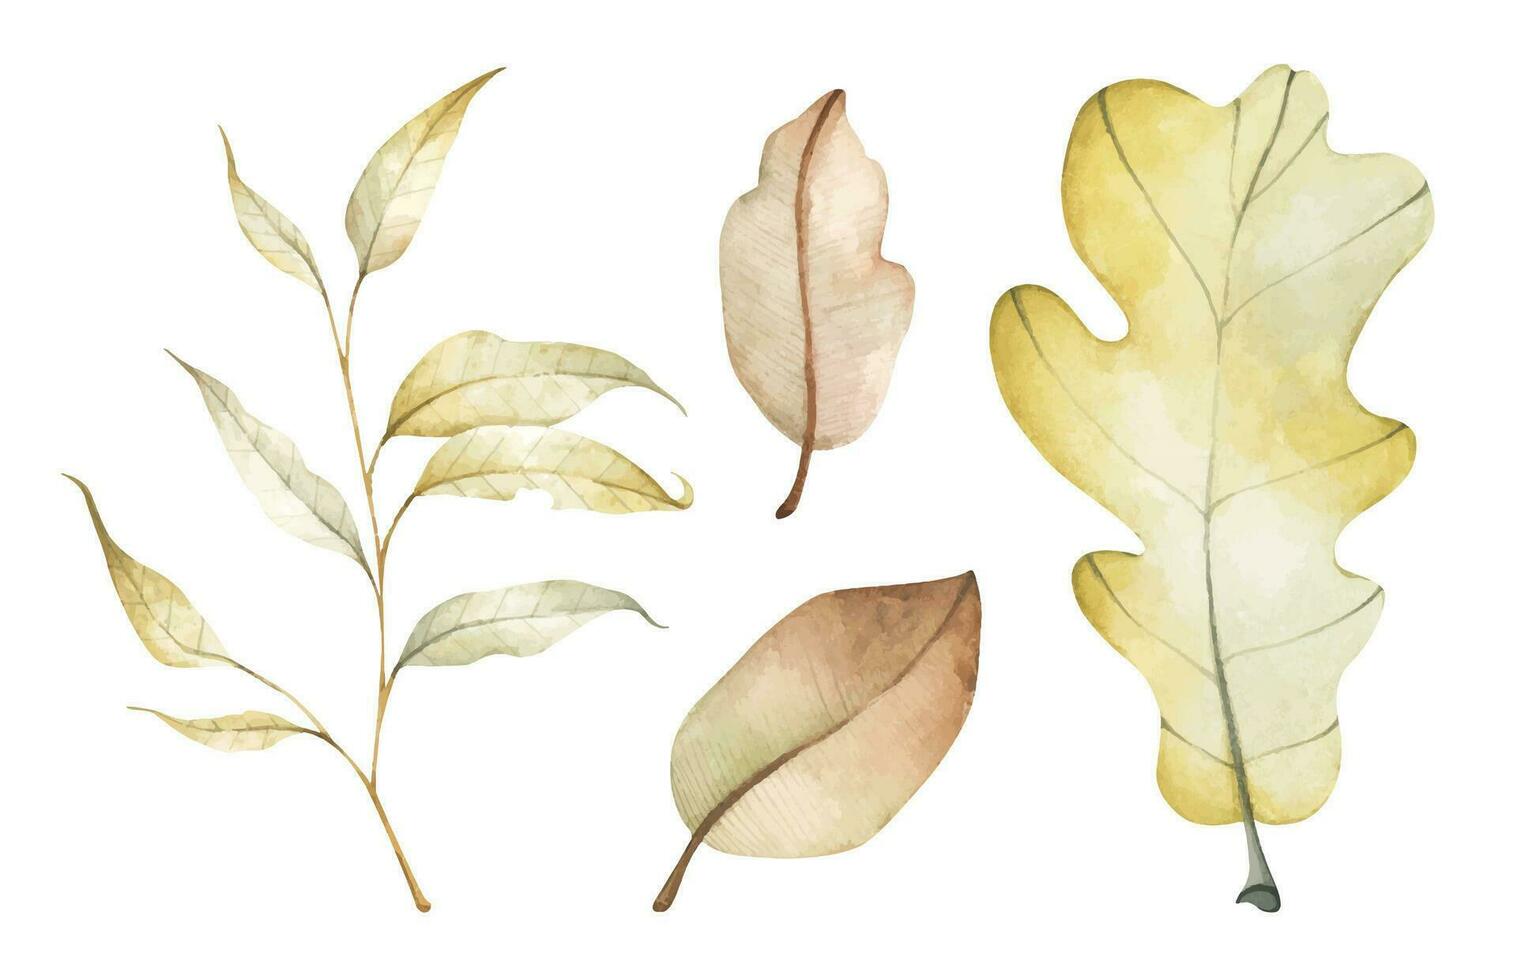 verzameling van veelkleurig gedaald herfst bladeren. waterverf illustratie. vector